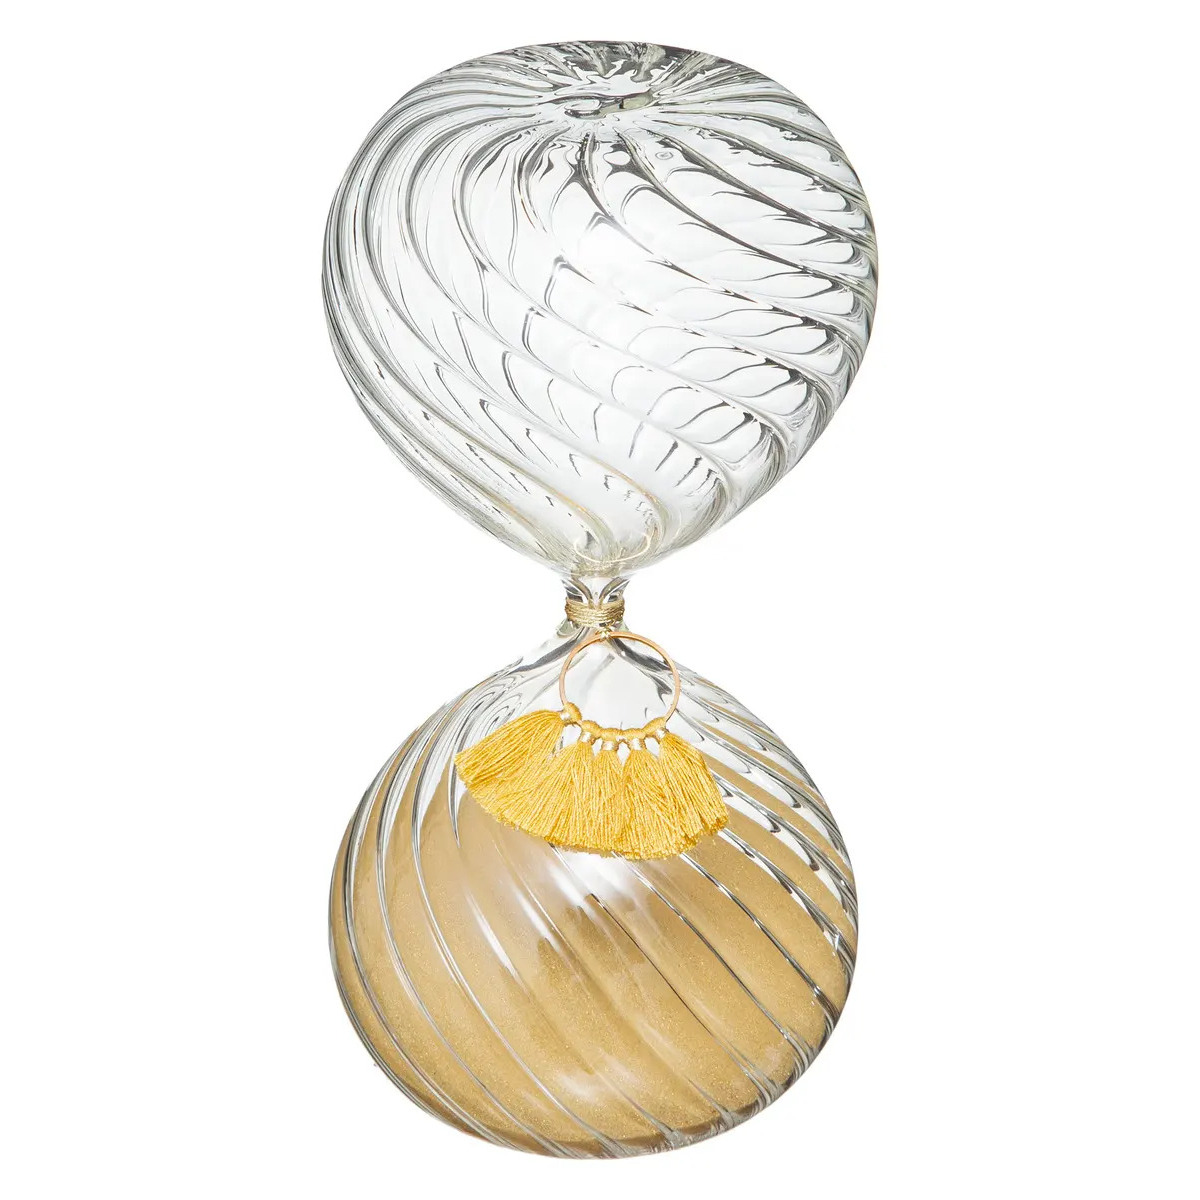 Zandloper cilinder decoratie of tijdsmeting 20 minuten geel zand H18 cm glas